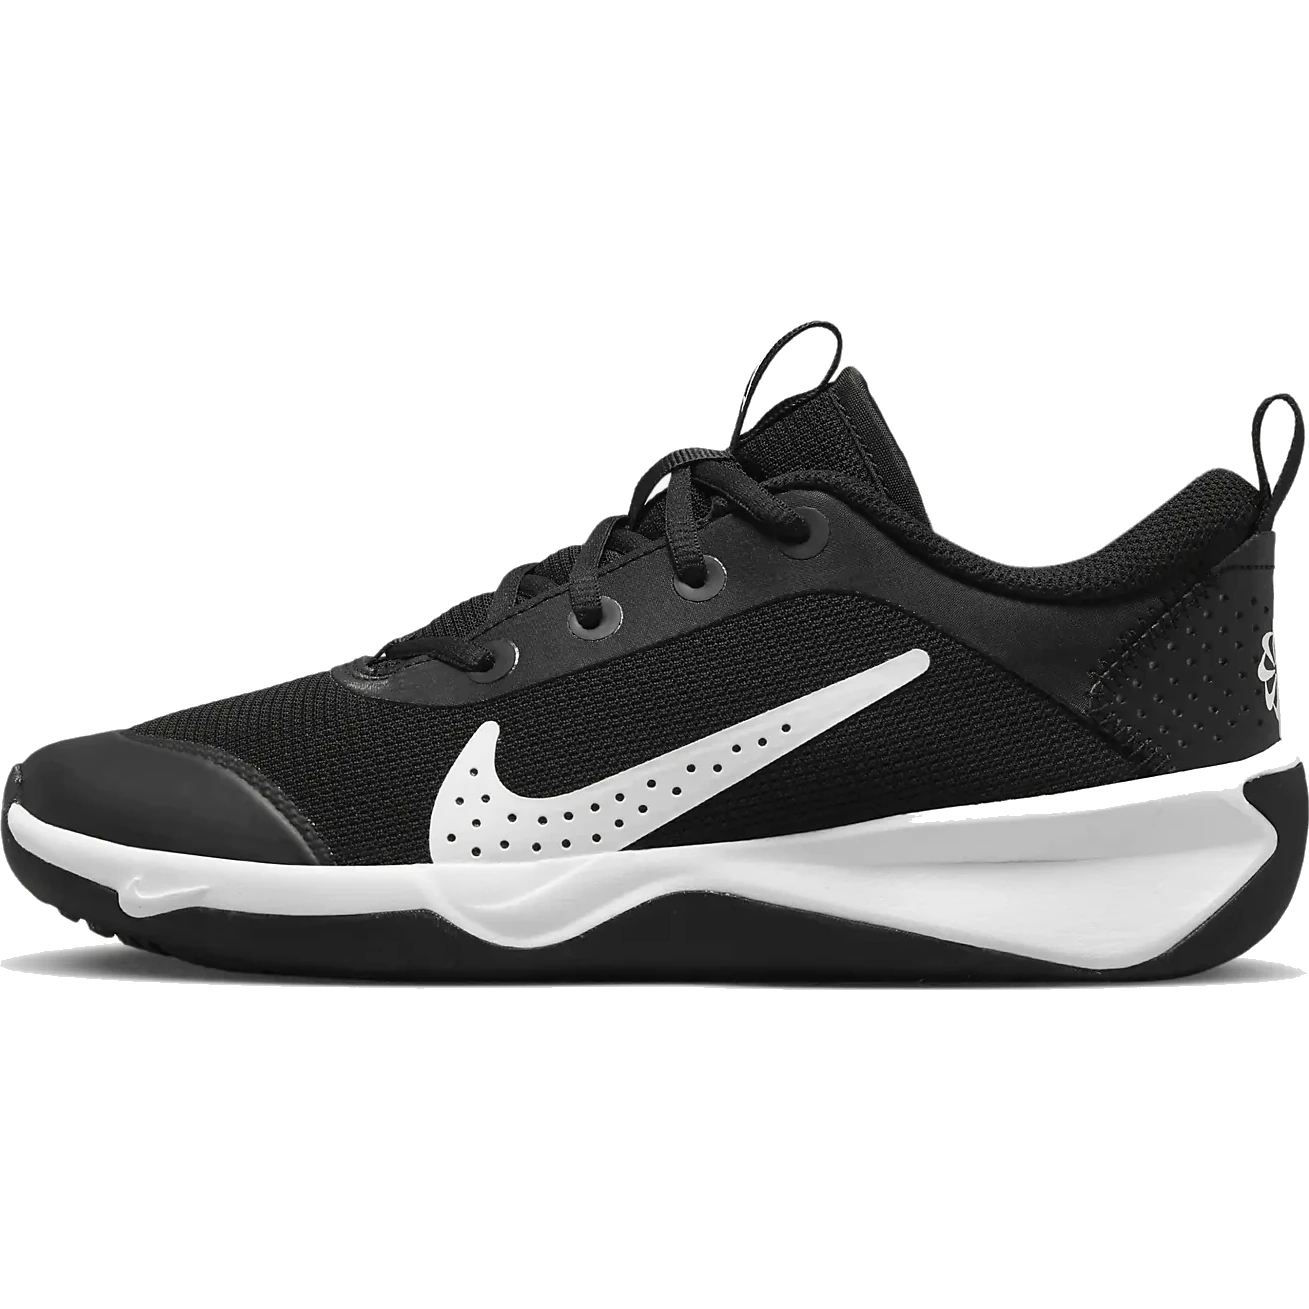 Produktbild von Nike Omni Multi-Court Hallenschuhe für ältere Kinder - schwarz/weiß DM9027-002